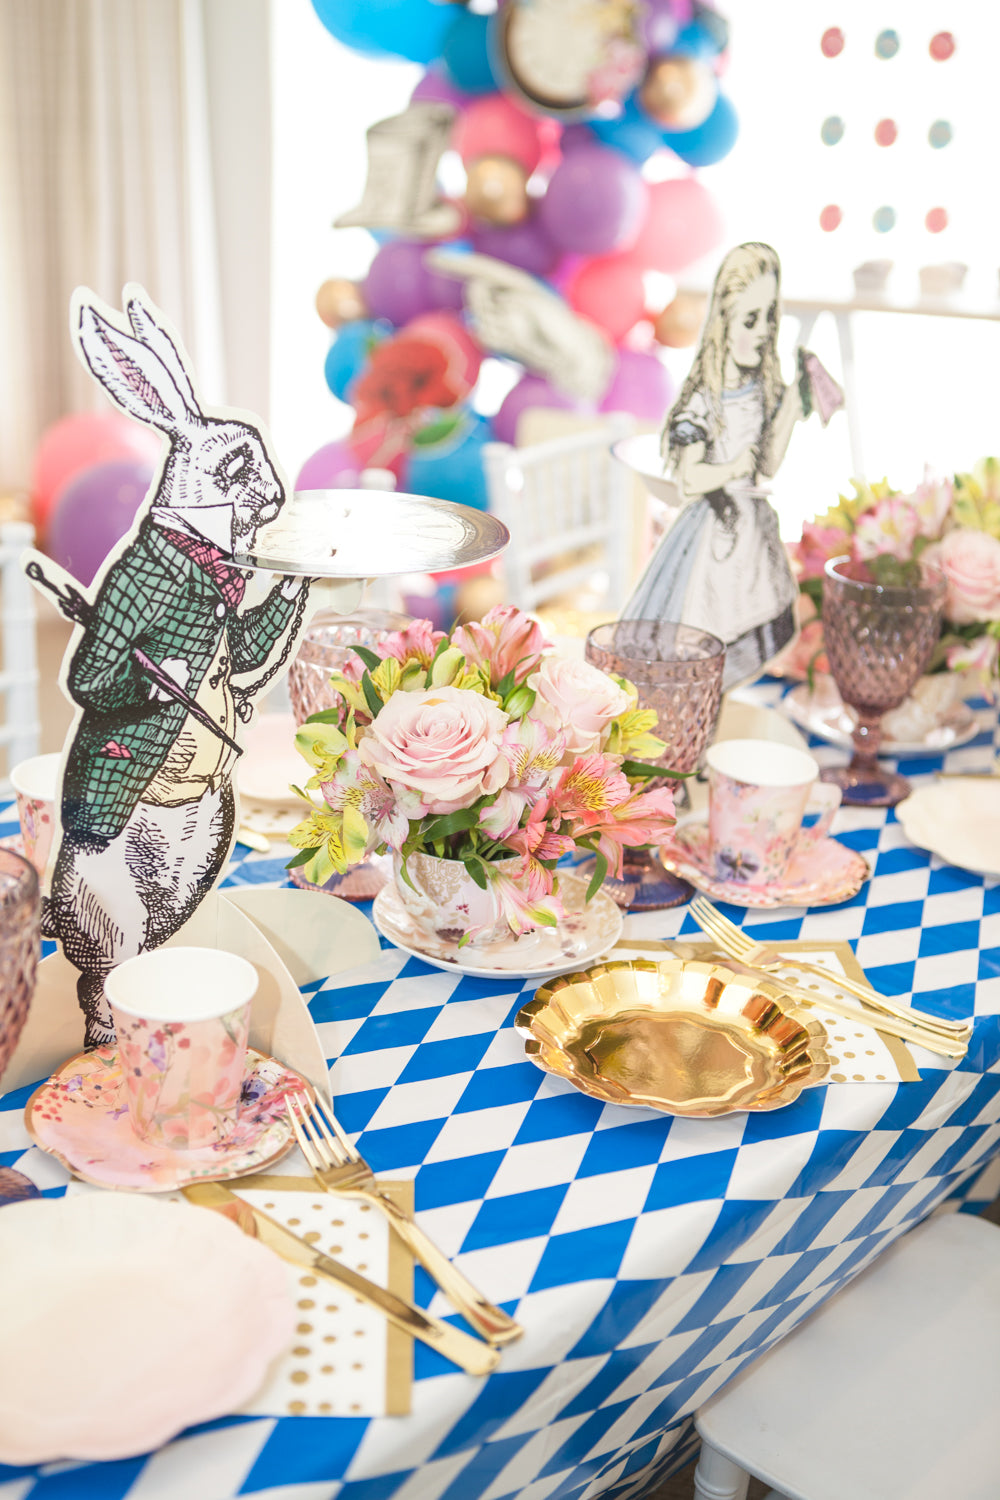 Alice In Wonderland Inspired Balloon Stickers, Alice In Wonderland Party  Supplies